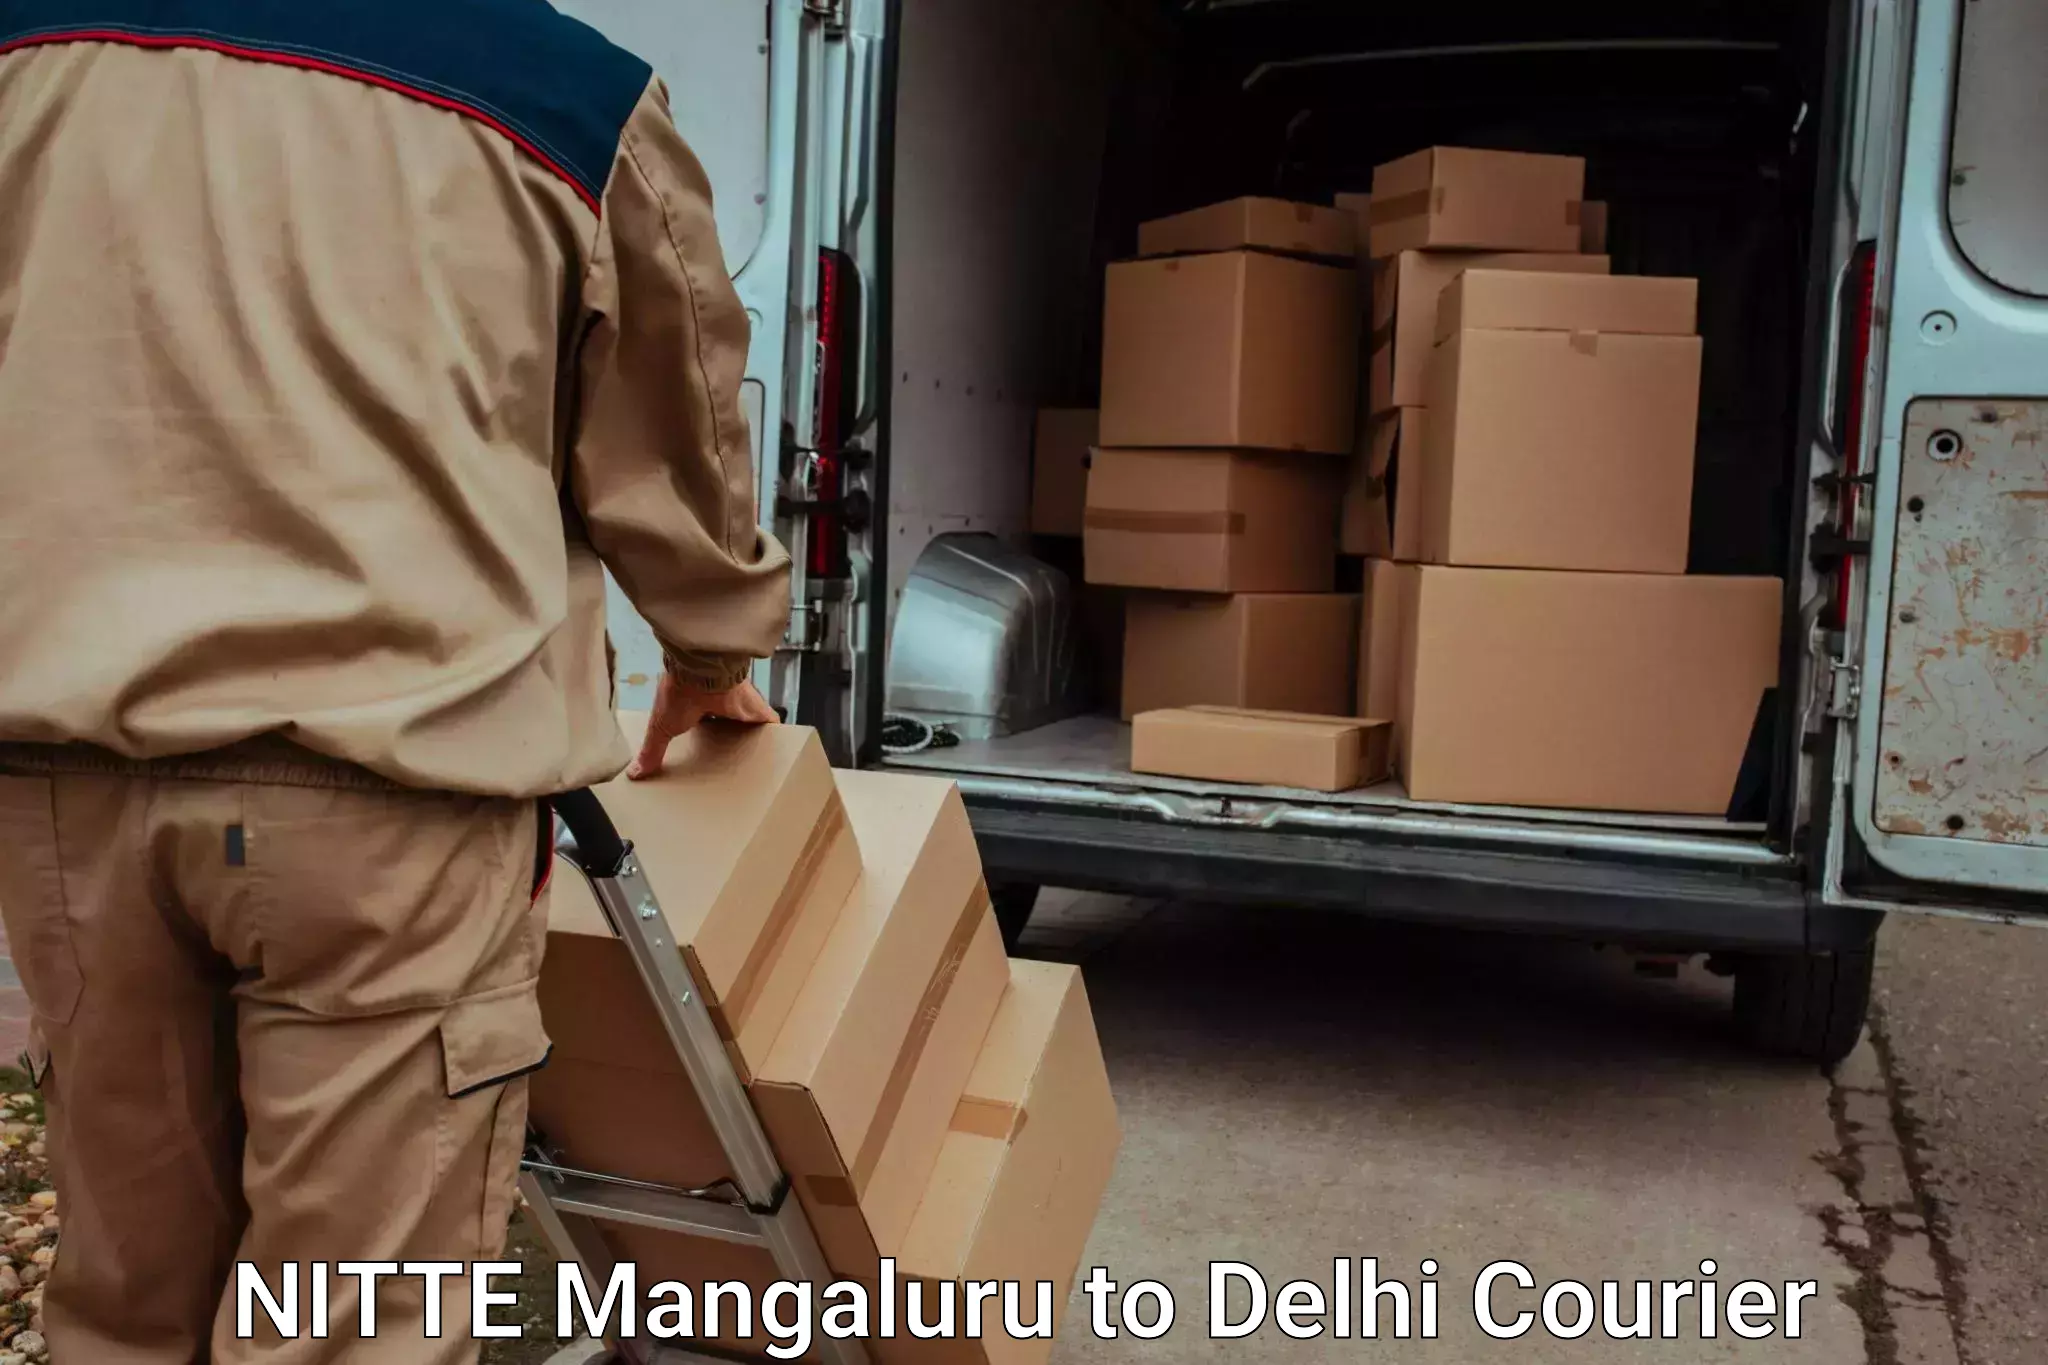 Furniture transport service NITTE Mangaluru to Lodhi Road